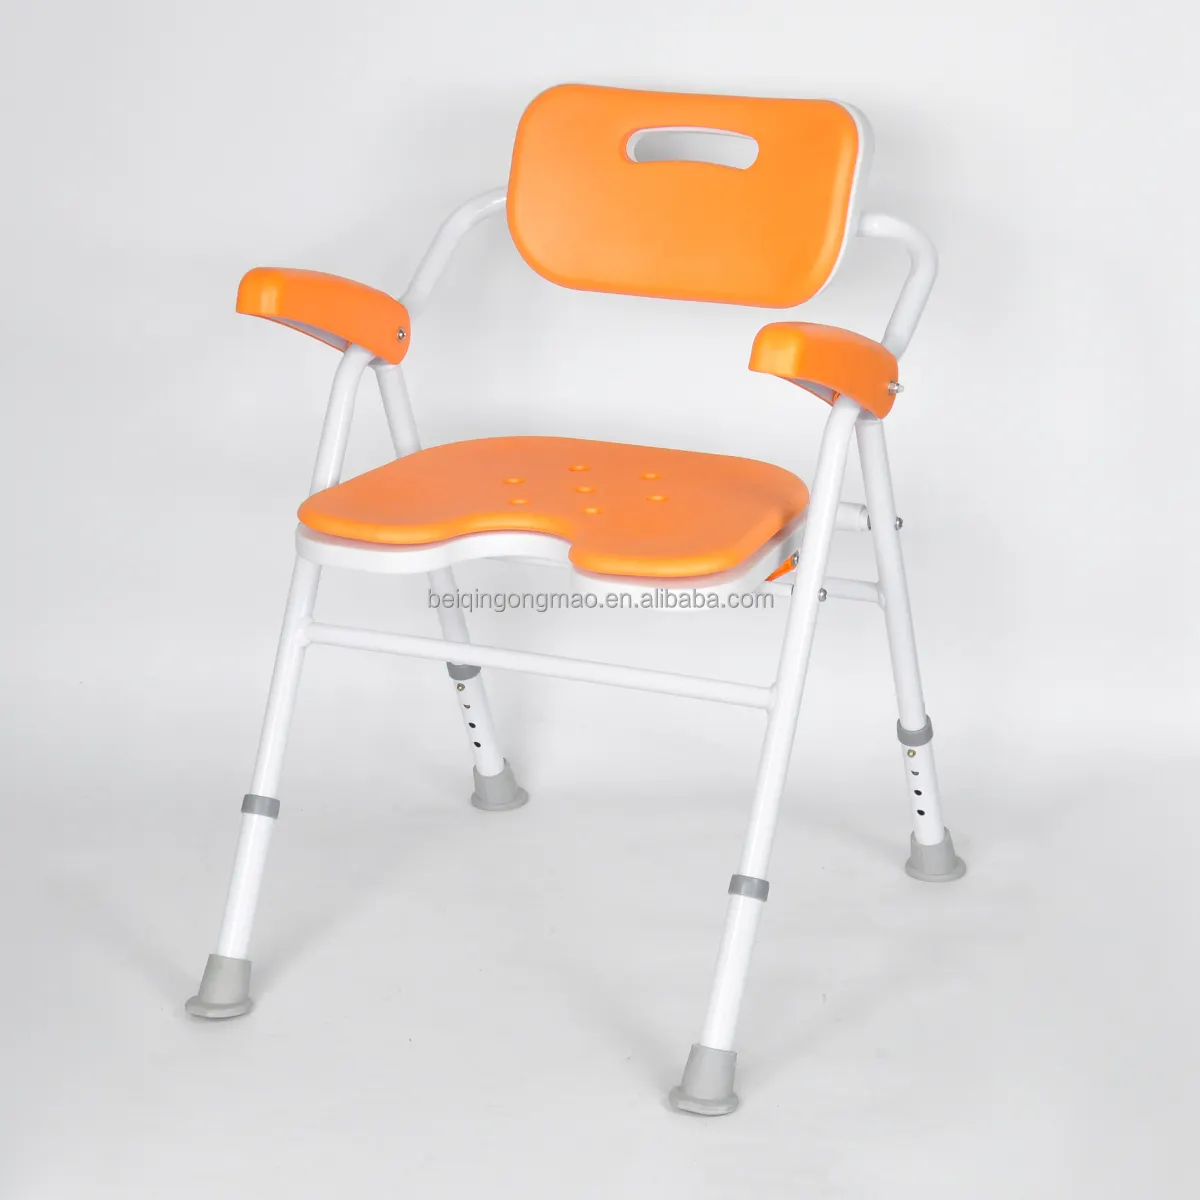 Kursi mandi lipat tugas berat medis, kursi mandi lipat dapat disesuaikan untuk orang tua manula cacat bariatrik dengan lengan dan belakang